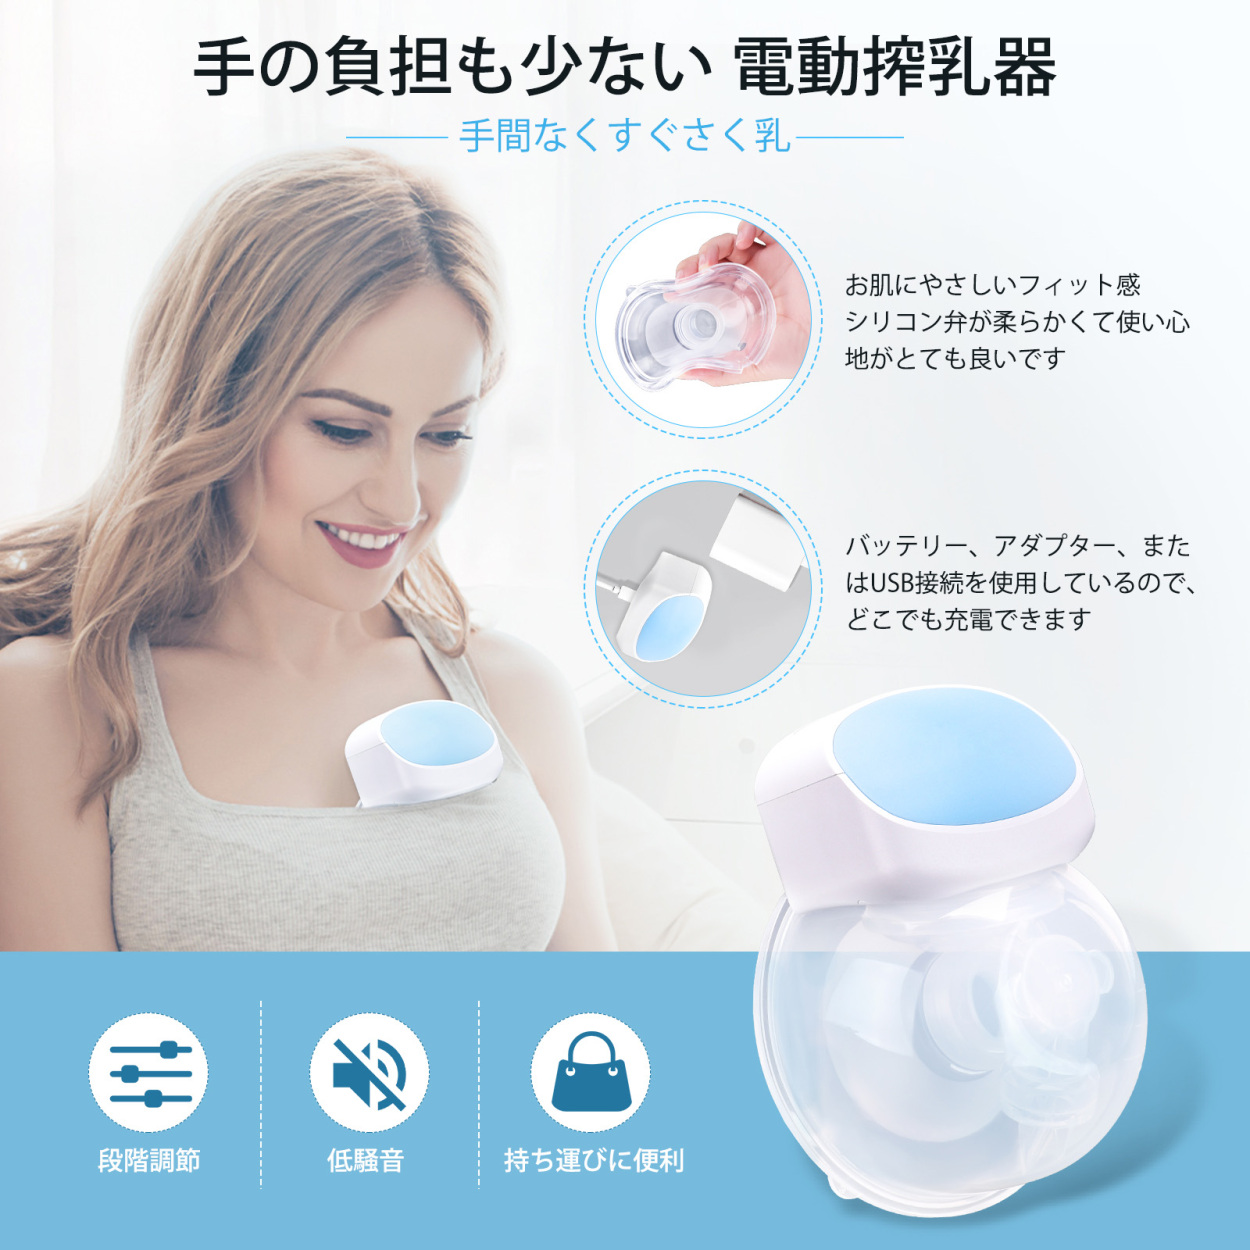 ｟電動搾乳機｠ベビー用品 赤ちゃん用 逆流防止